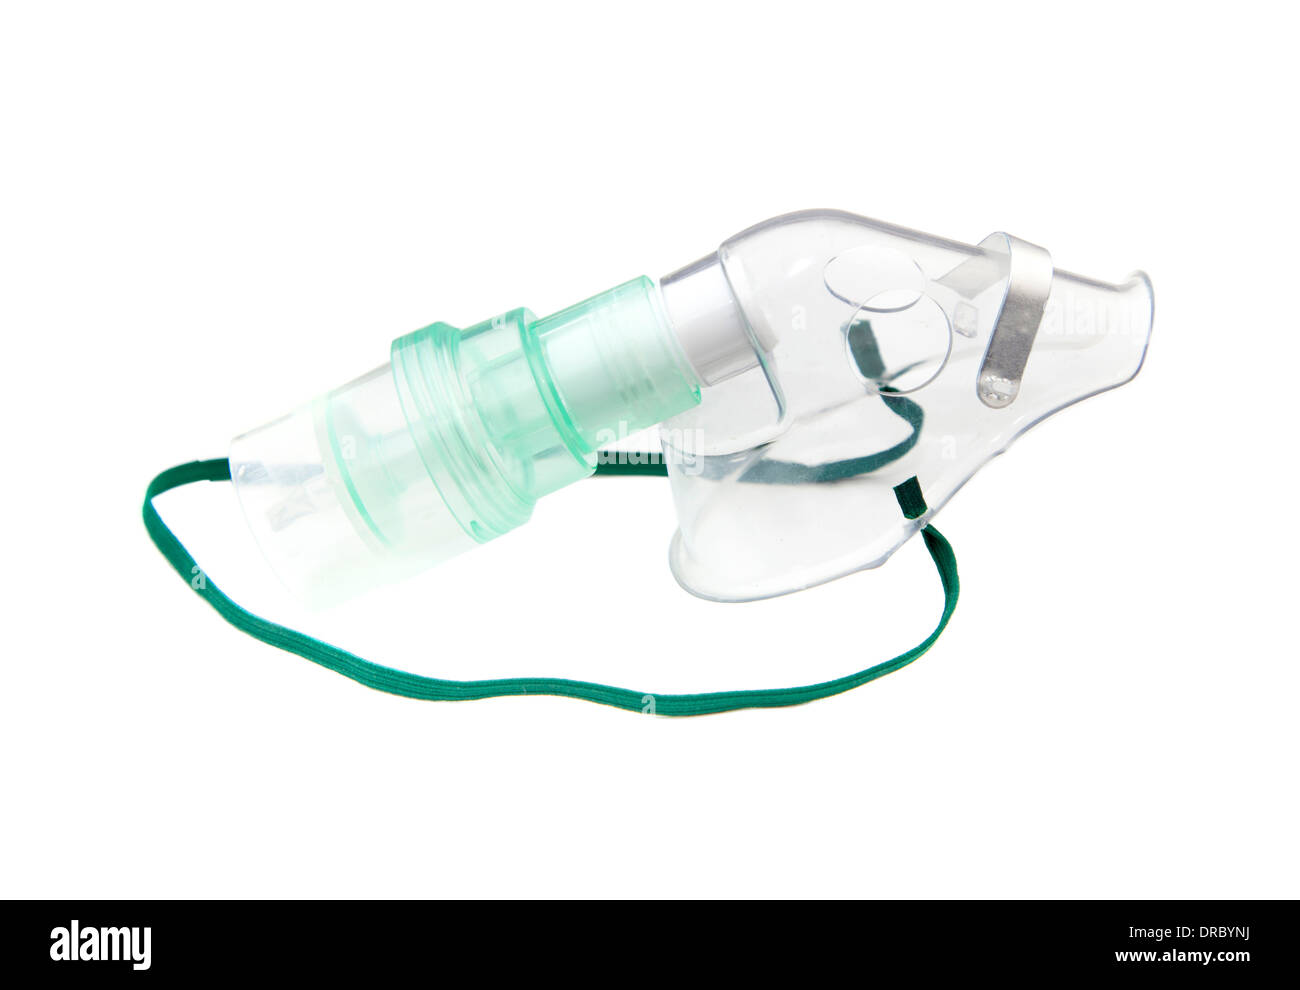 Oxygen inhalation mask isolated on white background Stock Photo